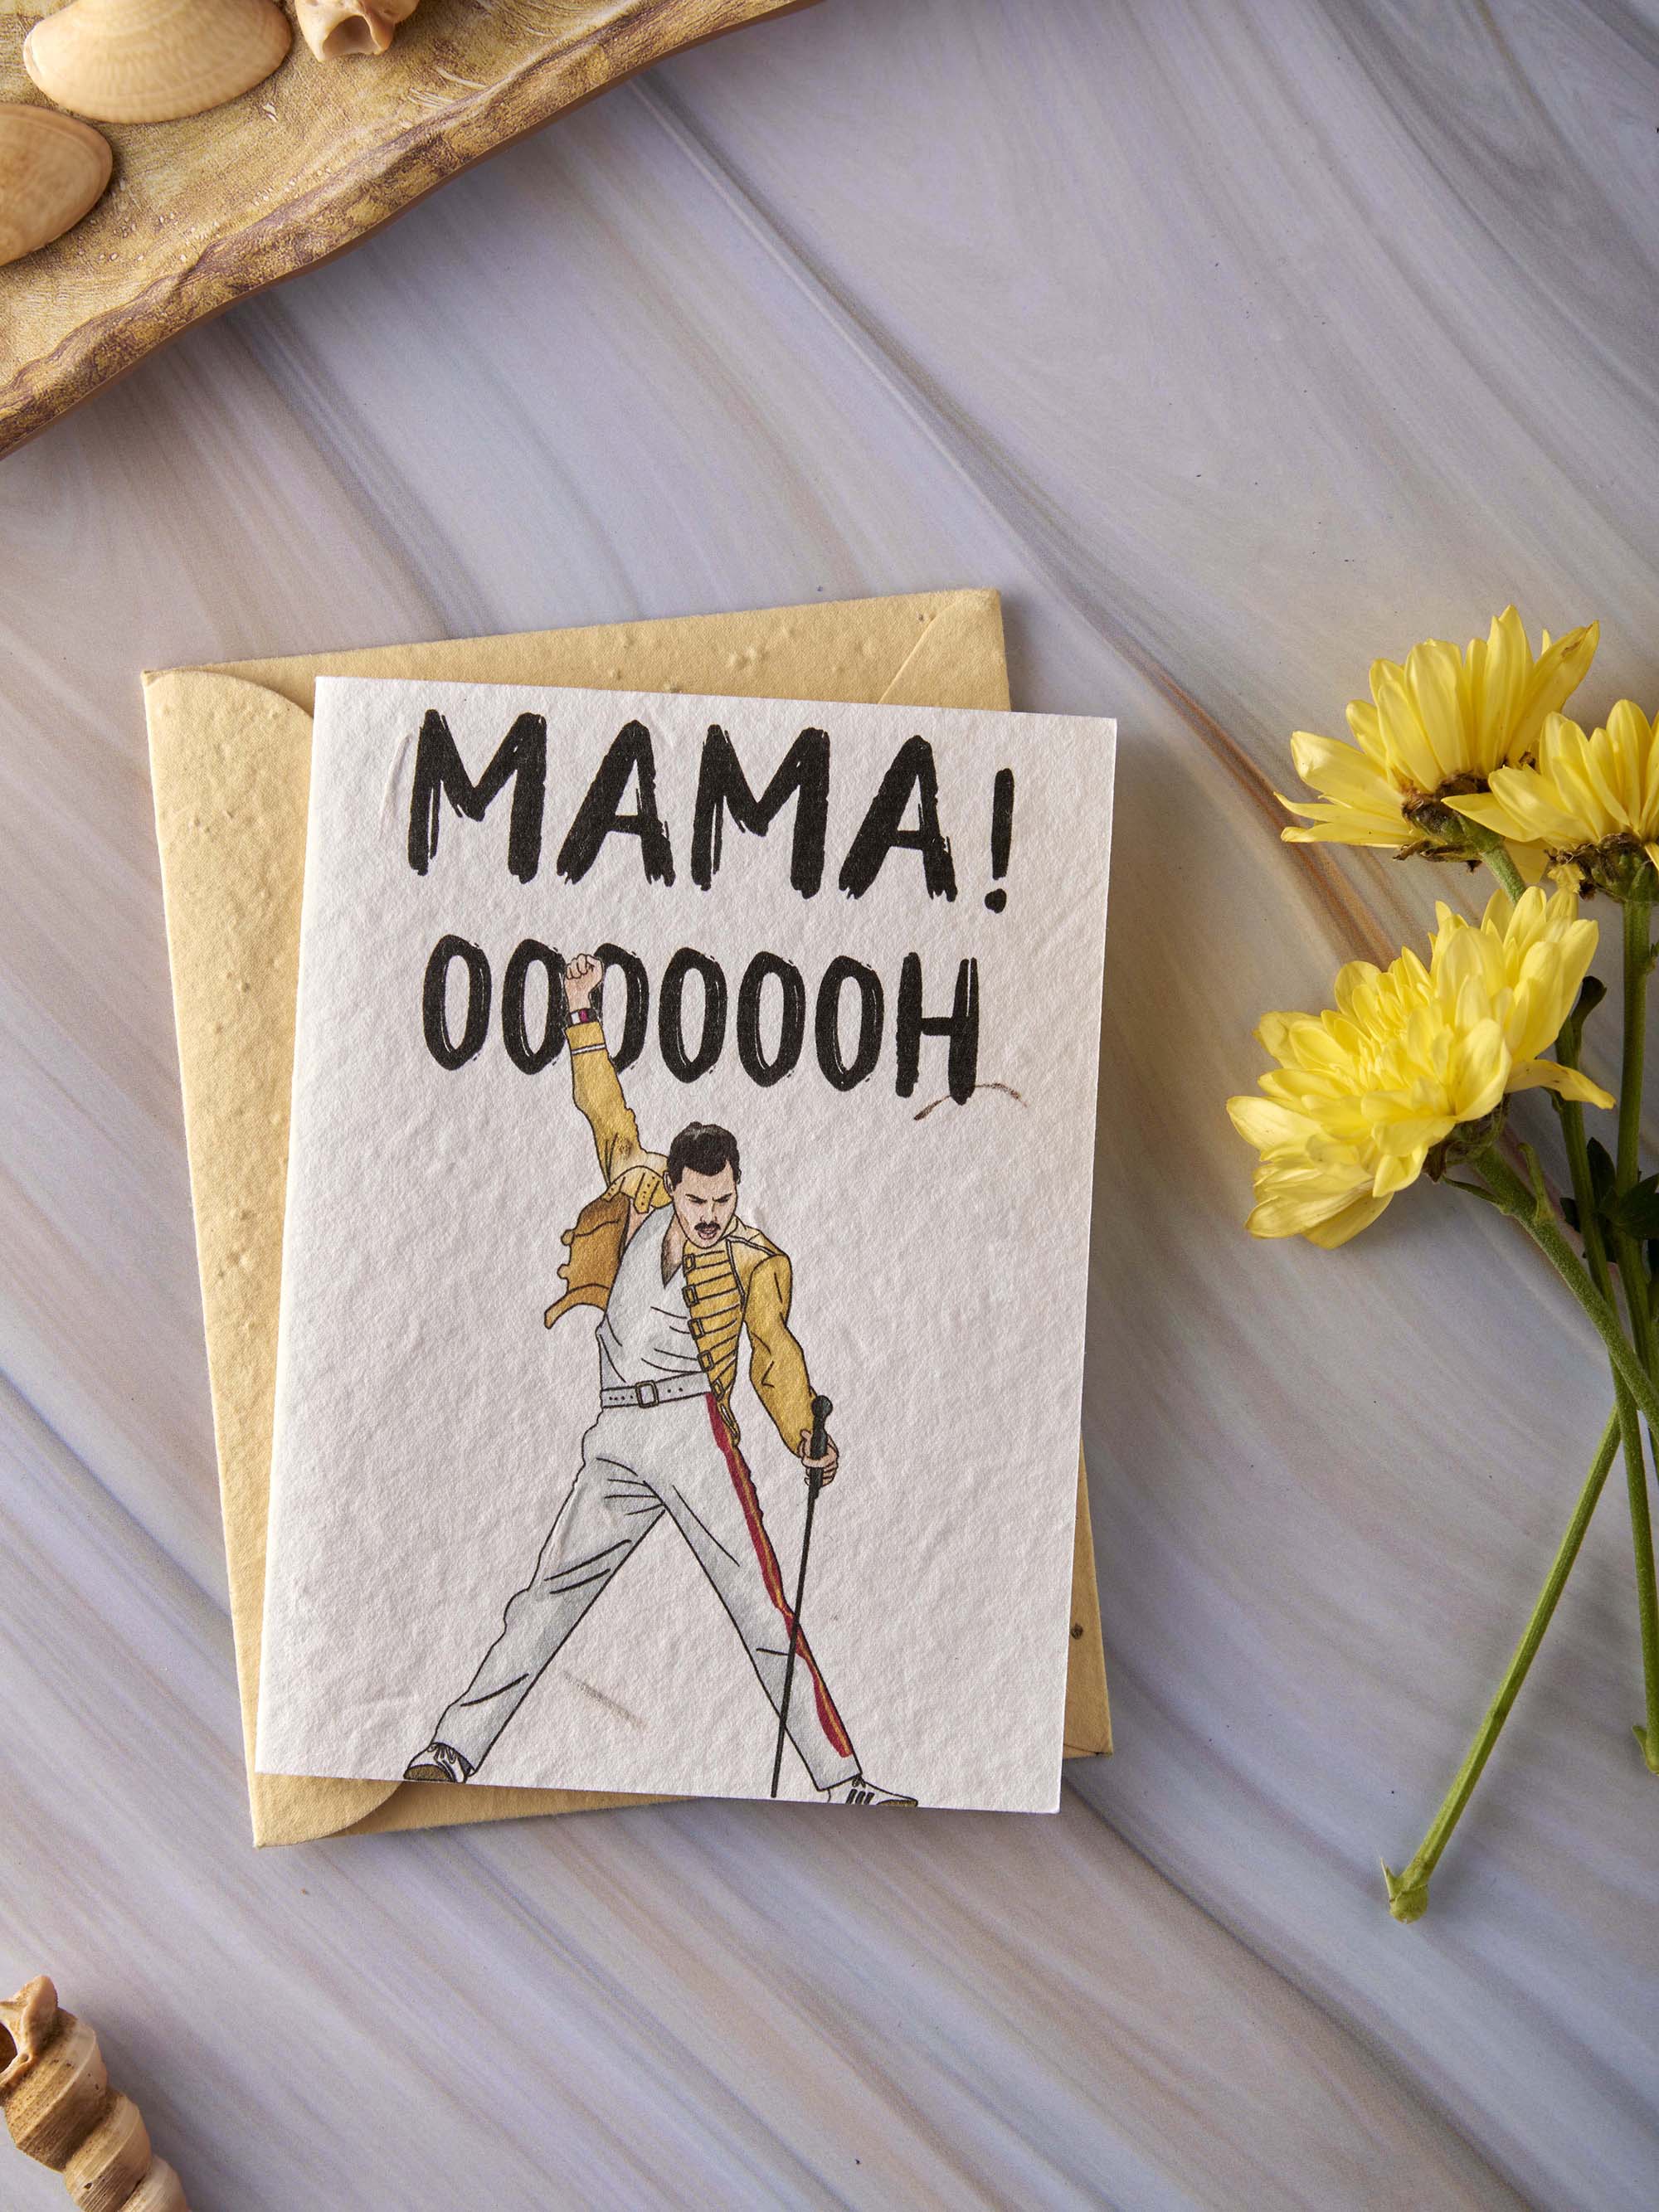 Mini Stationery Gift Kit for Mom